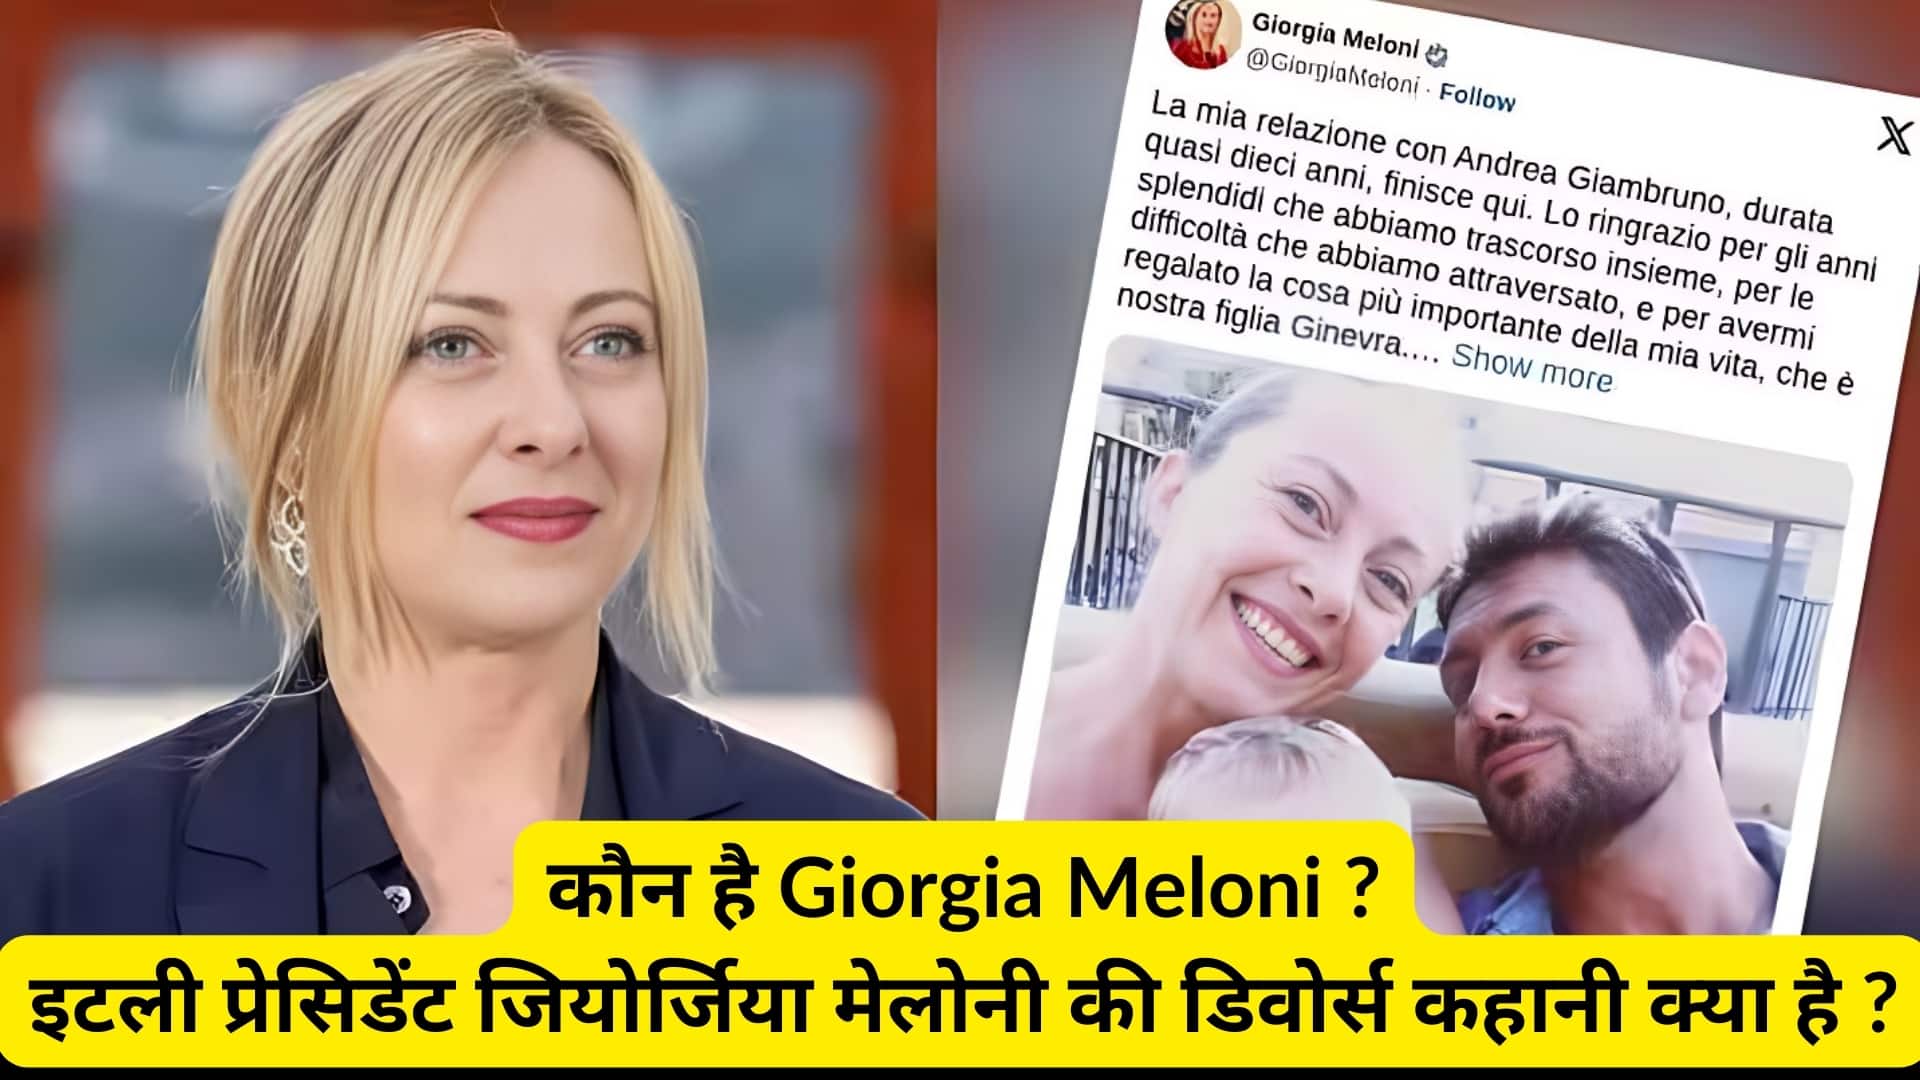 कौन है Giorgia Meloni ? इटली प्रेसिडेंट जियोर्जिया मेलोनी की डिवोर्स कहानी क्या है ?